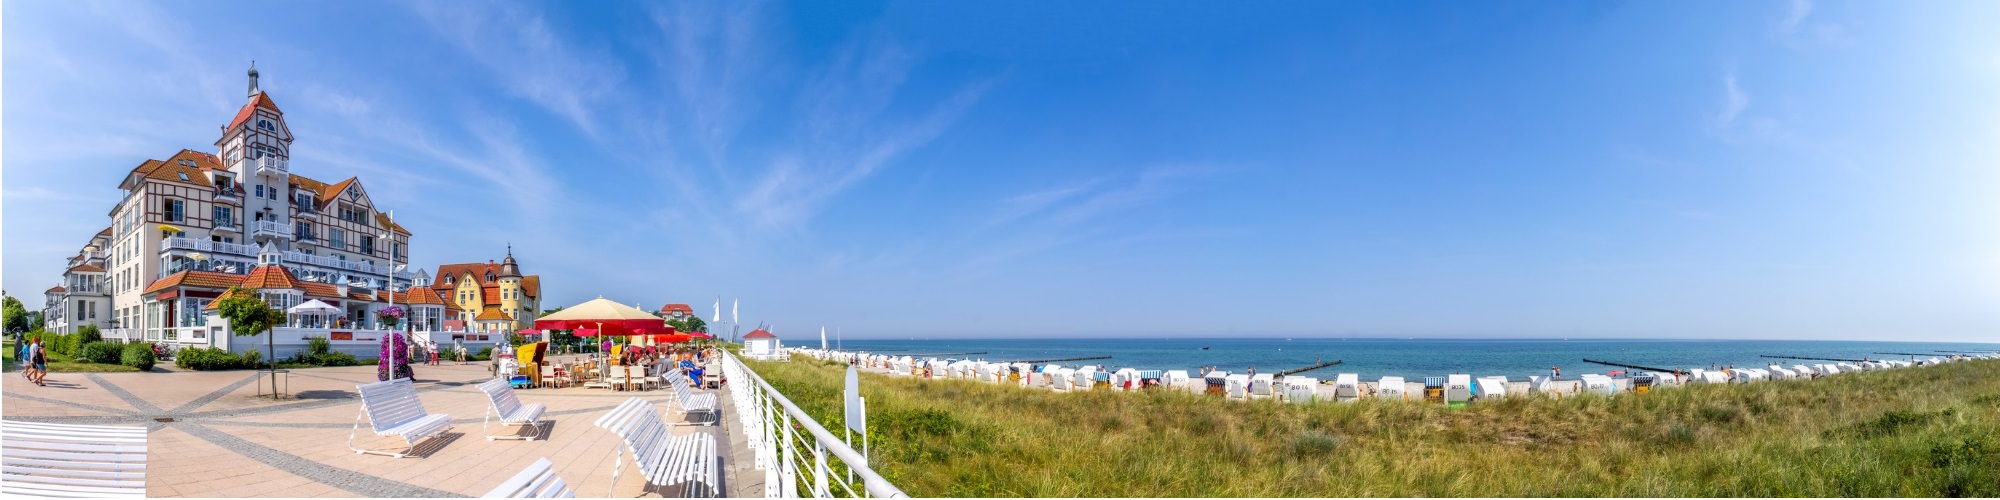 Panoramabild mit Strandkörben an der Ostsee